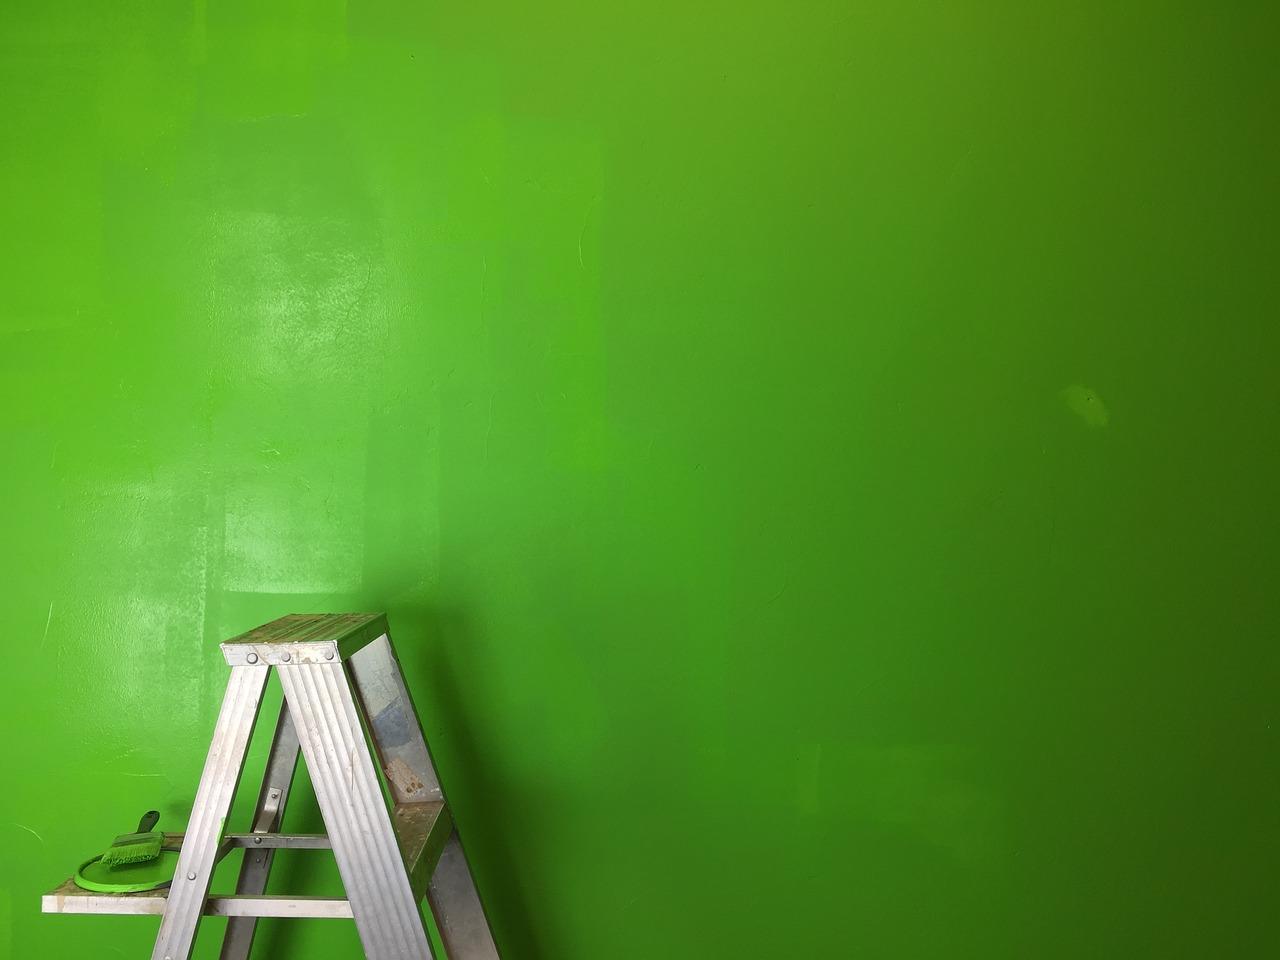 Jak profesjonalnie pomalować ścianę nad schodami: poradnik krok po kroku